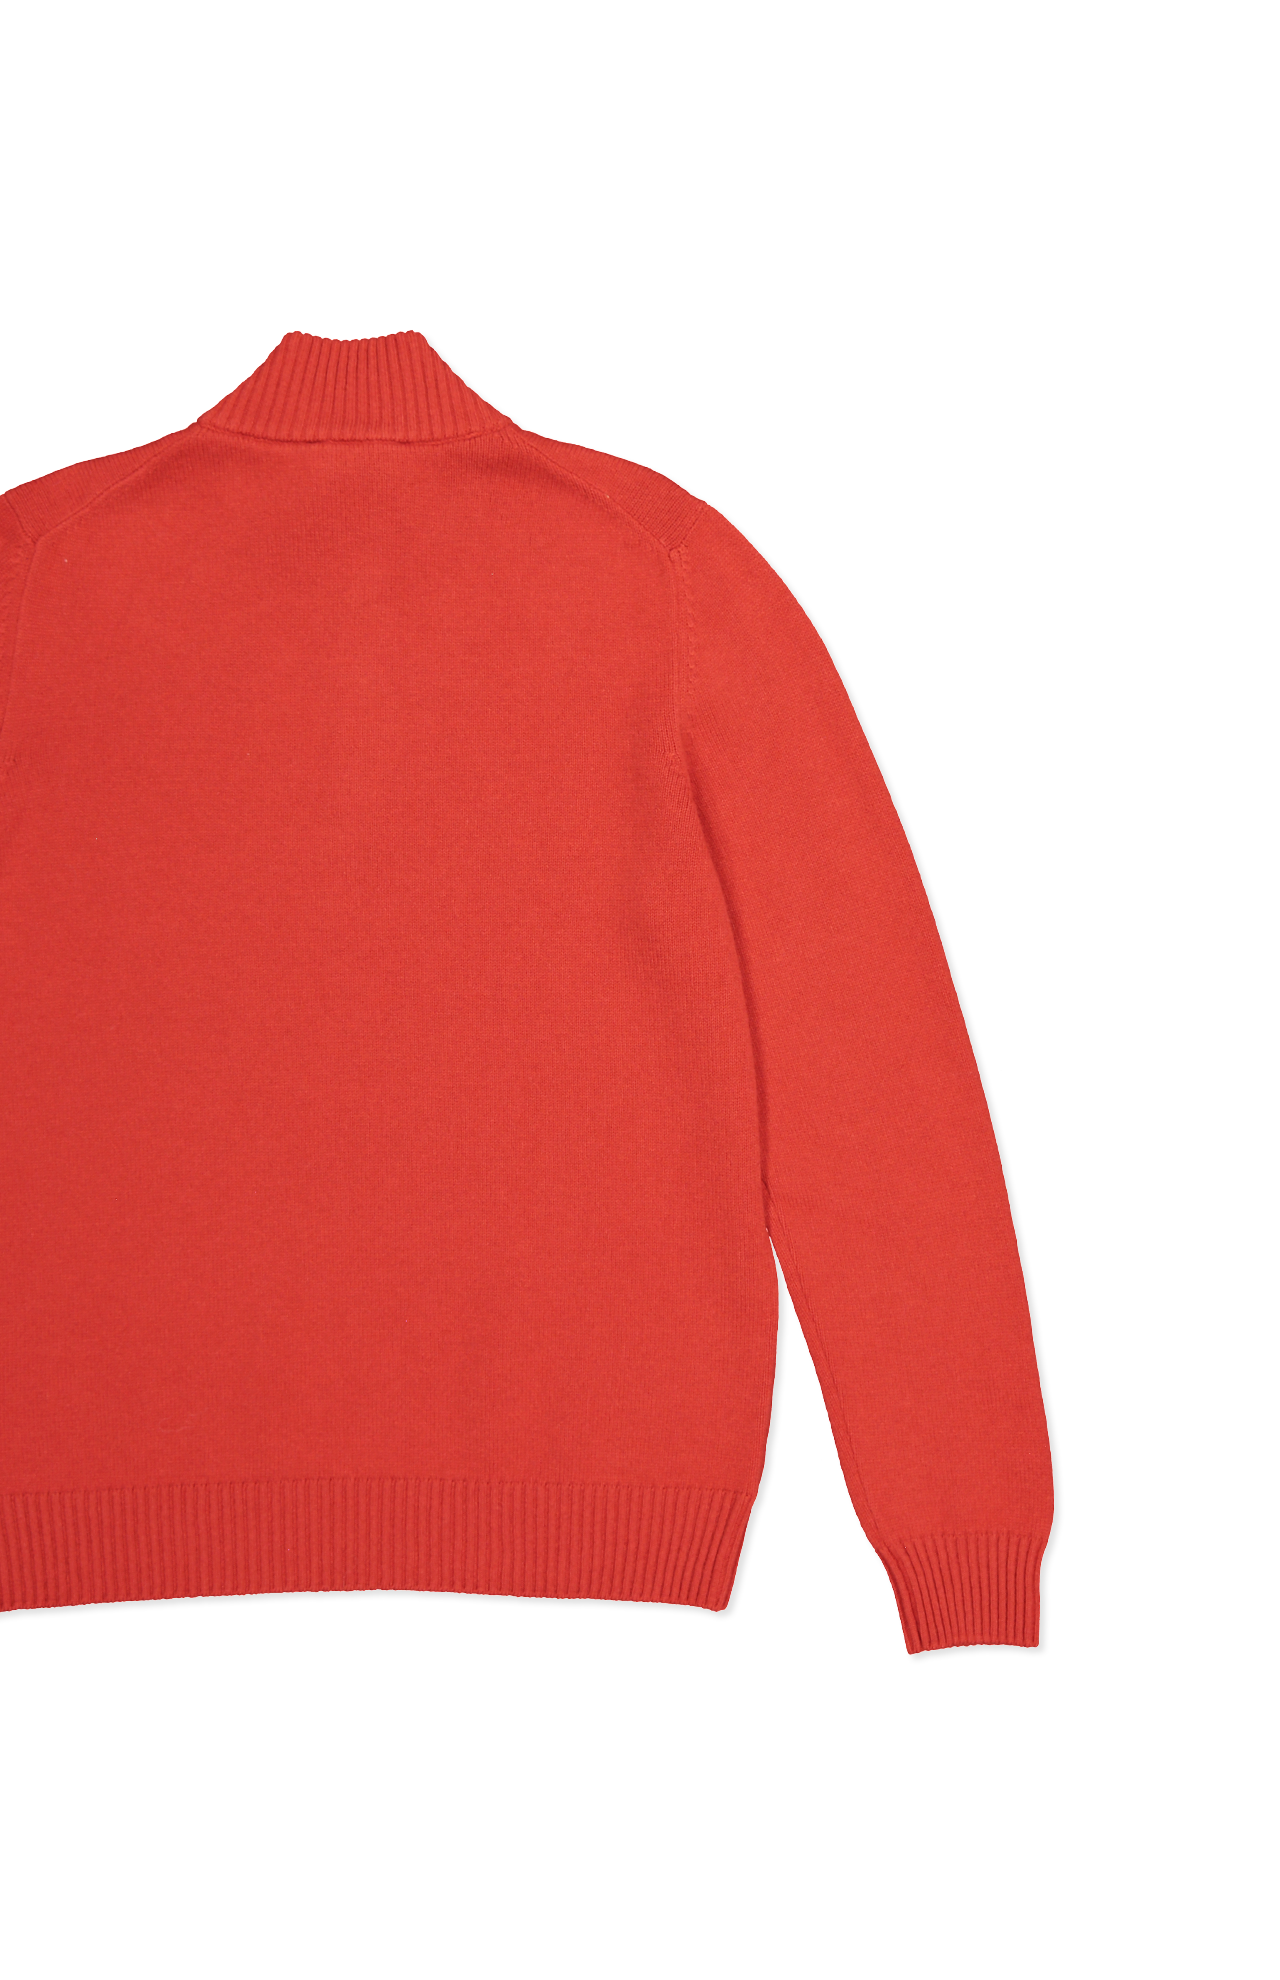 Gran Sasso Wool/Cashmere Quarter Zip Sweater in Orange - Back Detail Image  (6897541251187)